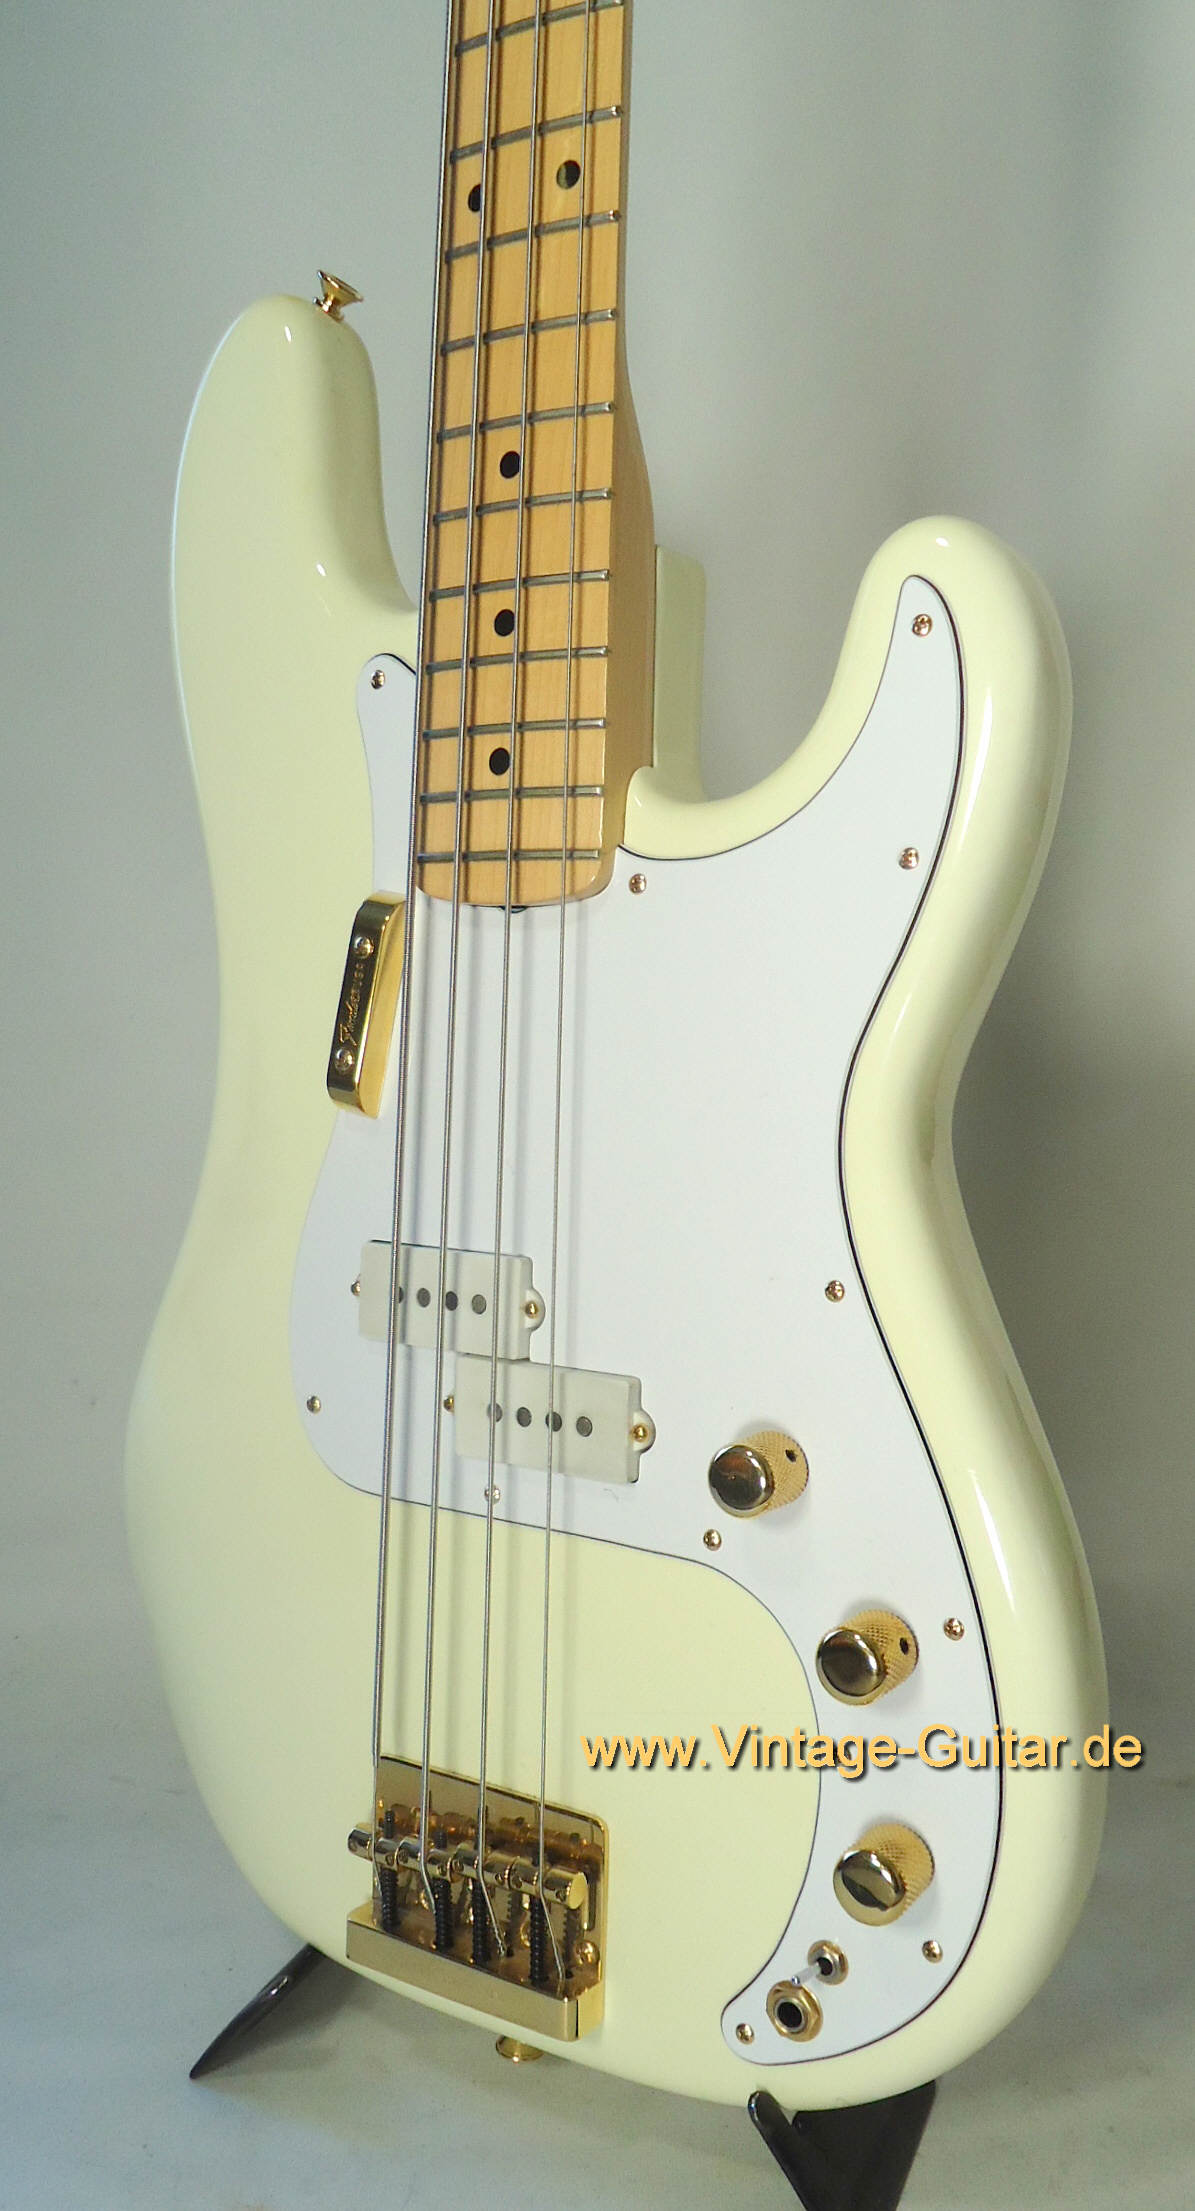 Fender-Precision-Special-1982-white-body-b.jpg